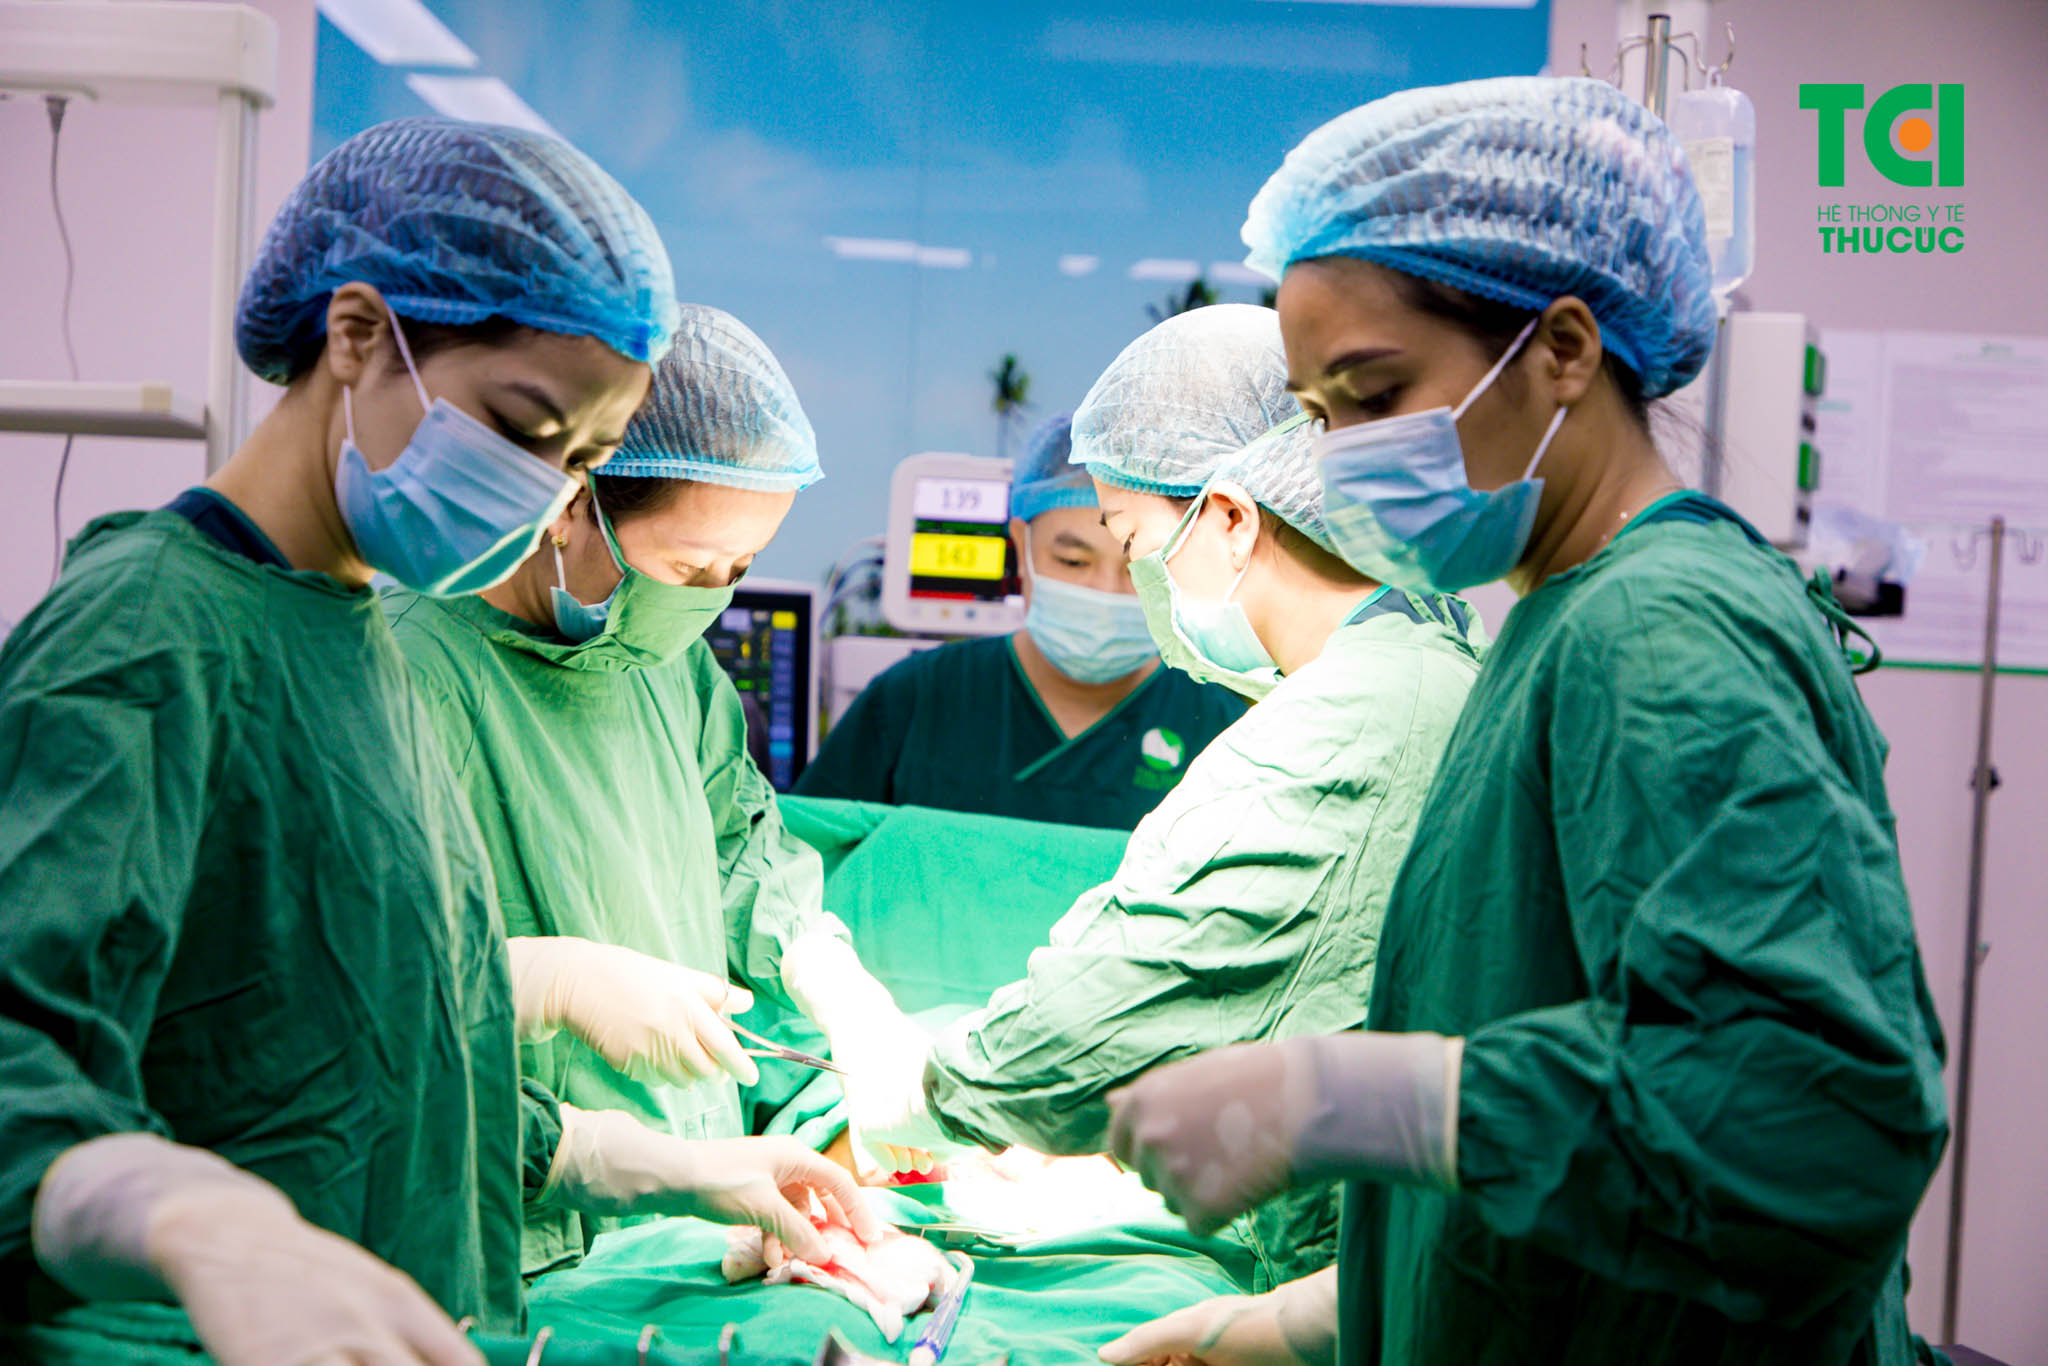 Ekip bác sĩ Nguyễn Thị Hiền thực hiện mổ đẻ cho chị Giang - thai ngôi mông, viêm gan B thể không hoạt động